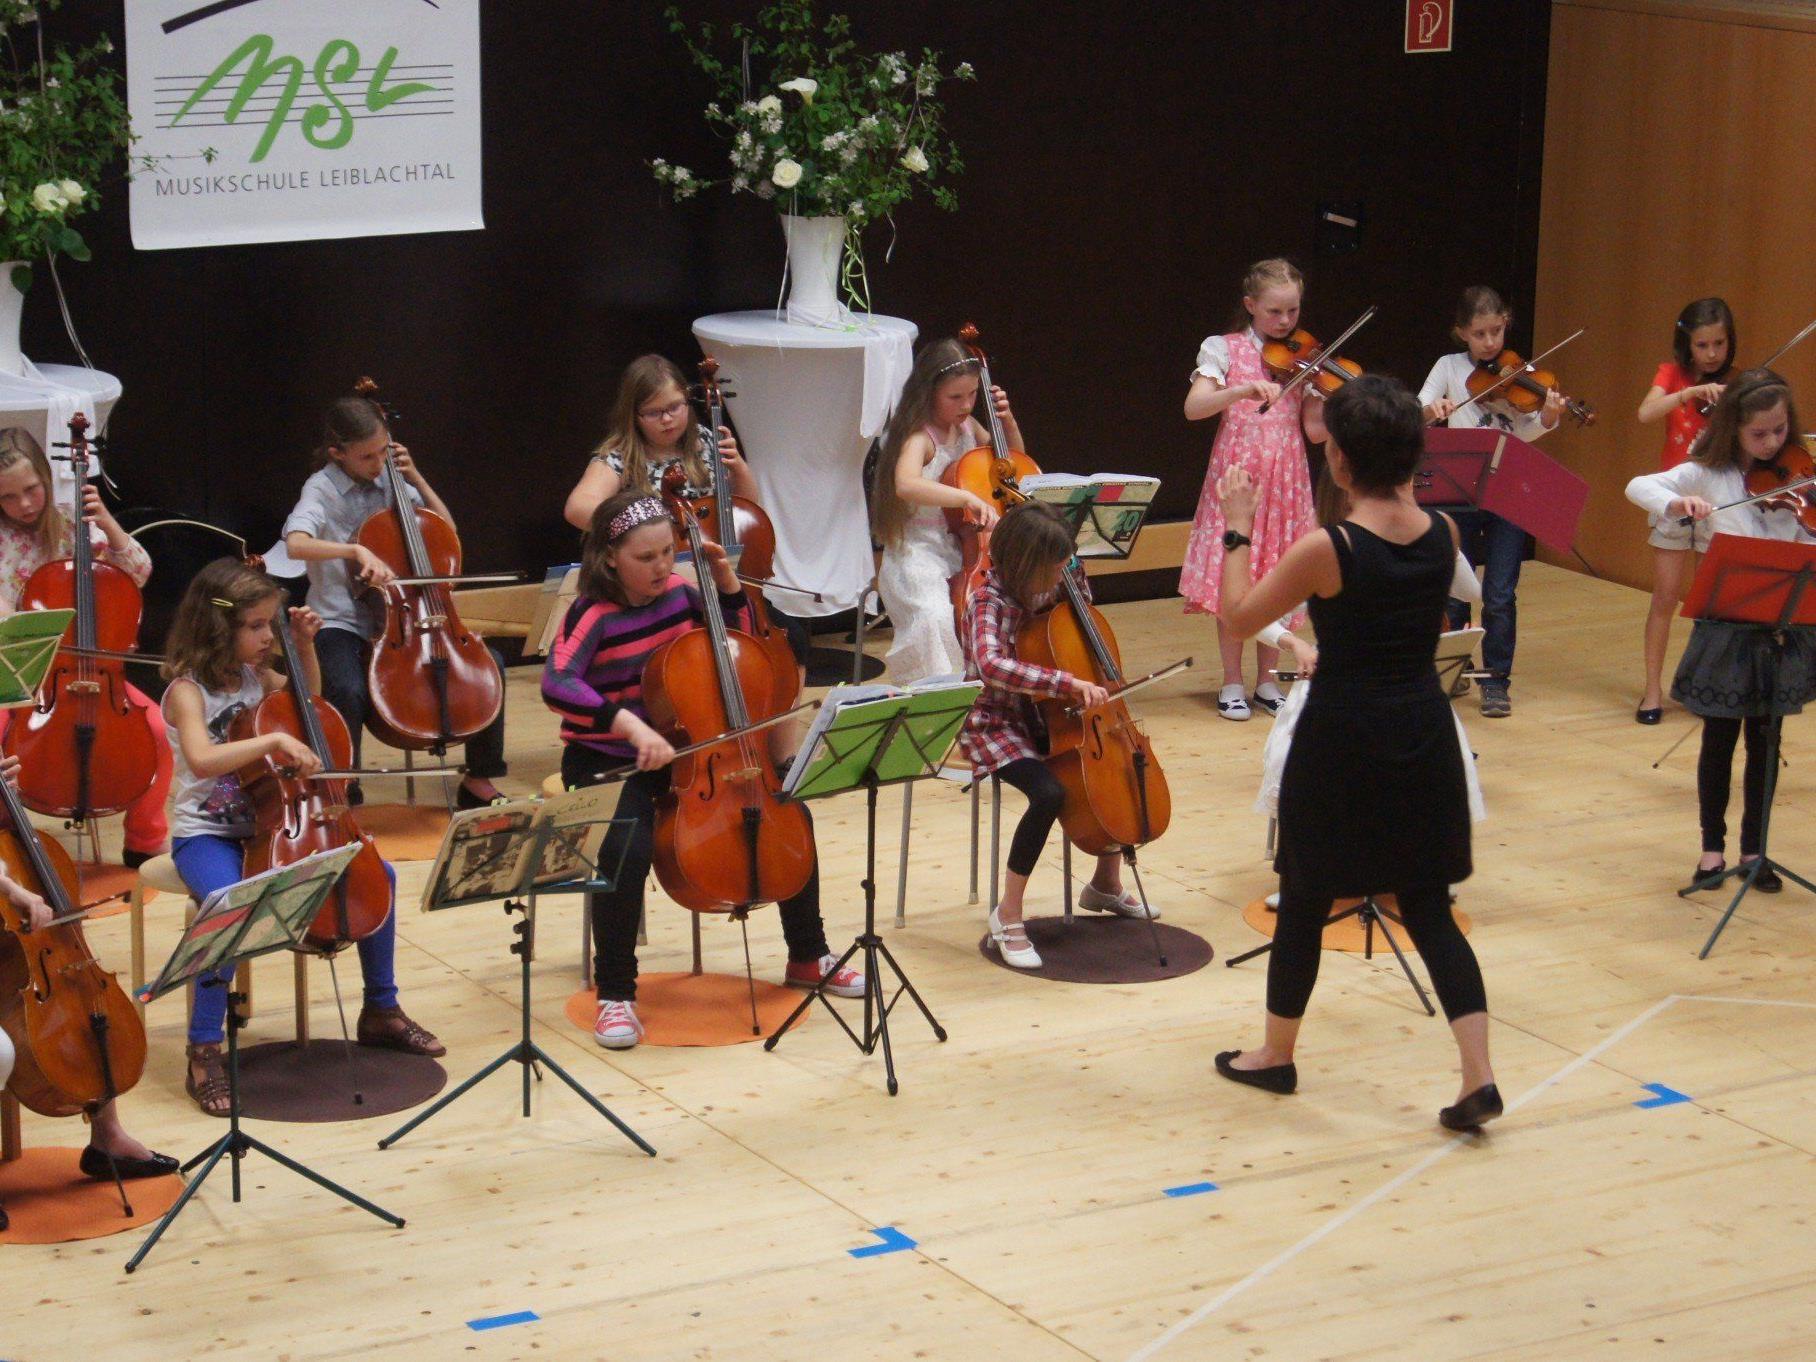 Mit Musik und Tanz gratulieren die jungen Künstler der Musikschule Leiblachtal zum Muttertag.